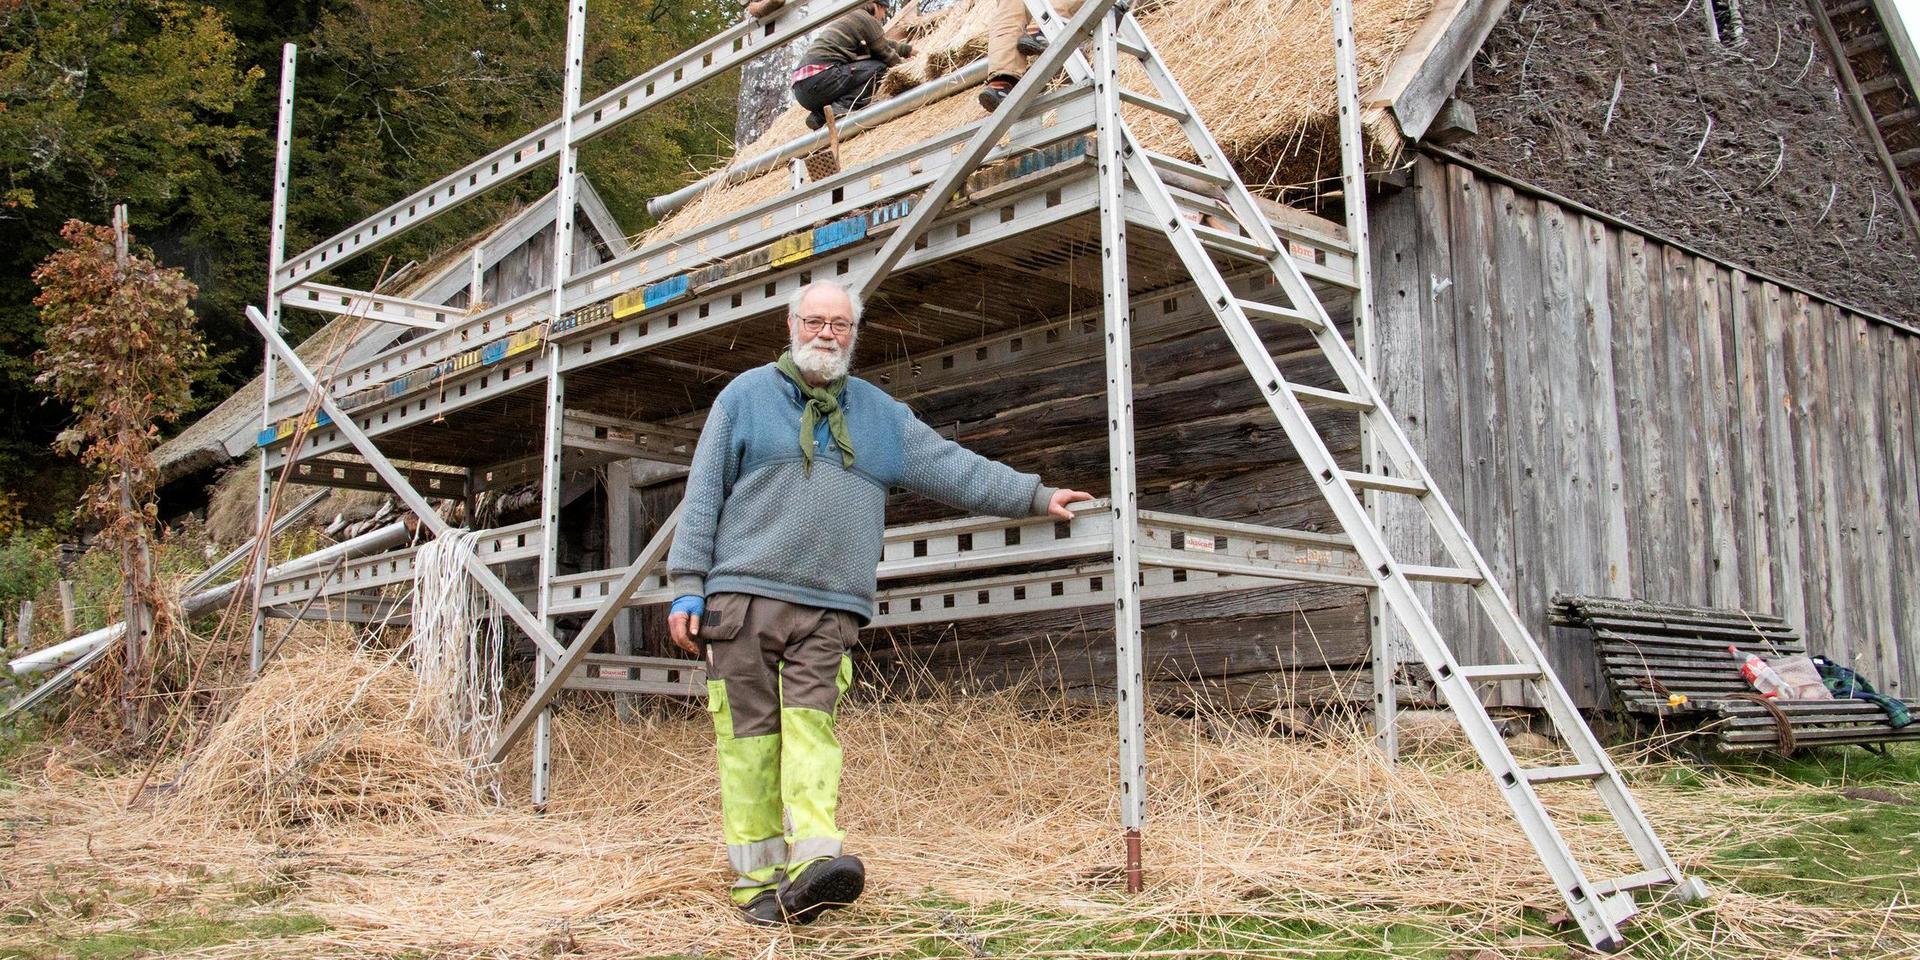  Sten Nilsson är förutom expert på gamla byggnadssätt också ordförande i Ysby hembygdsförening, som äger den byggnadsminnesförklarade ryggåsstugan.